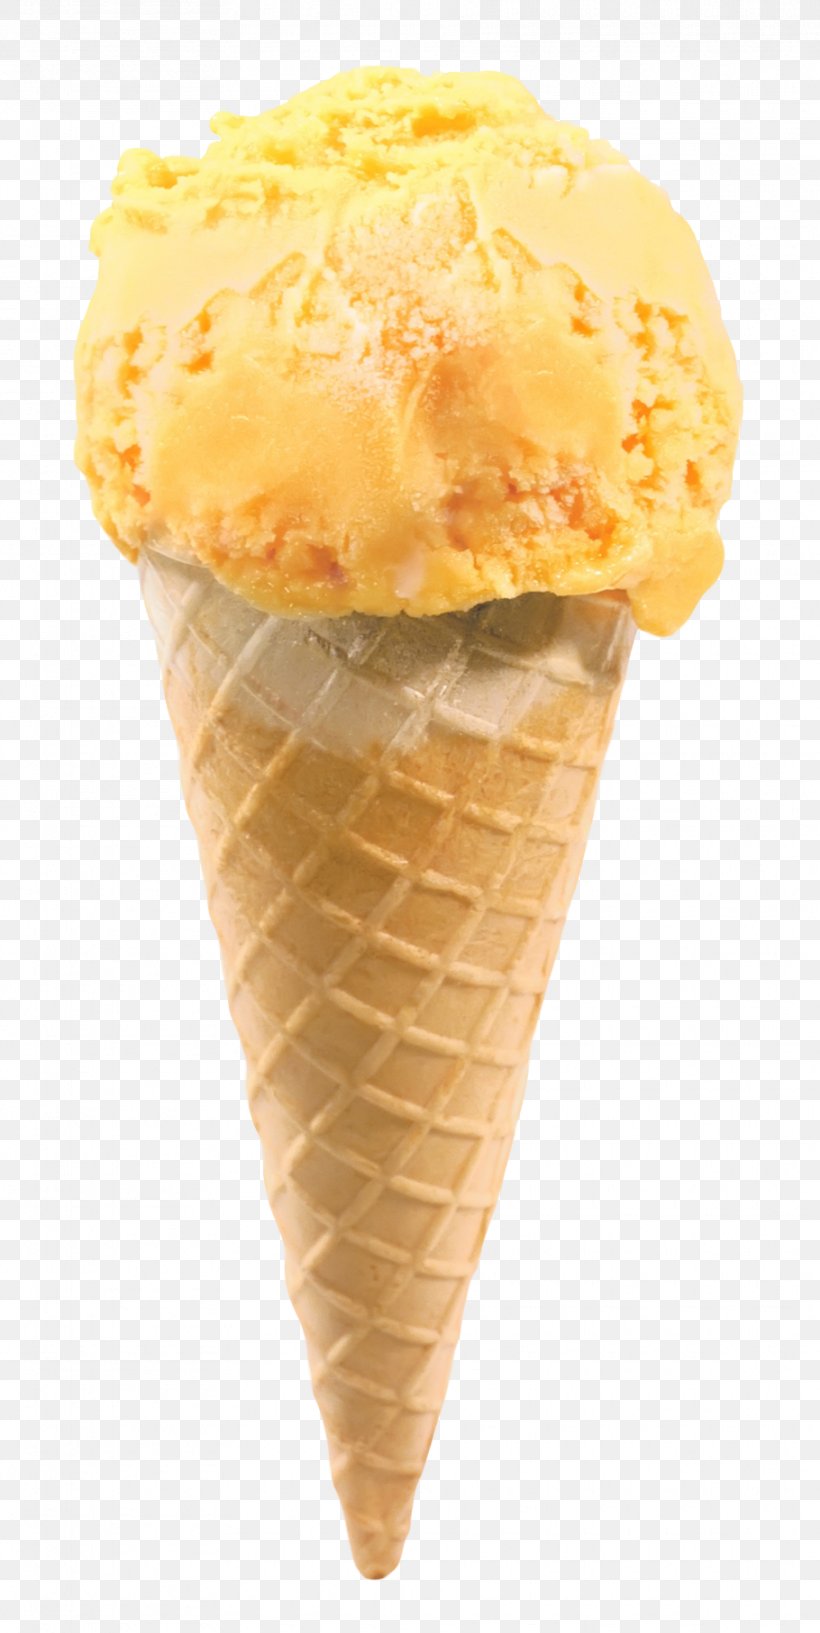 Ice Cream Cone Gelato Milkshake Snow Cone, PNG, 910x1813px, Ice Cream, Chocolate Ice Cream, Cone, Confectionery, Cream Download Free